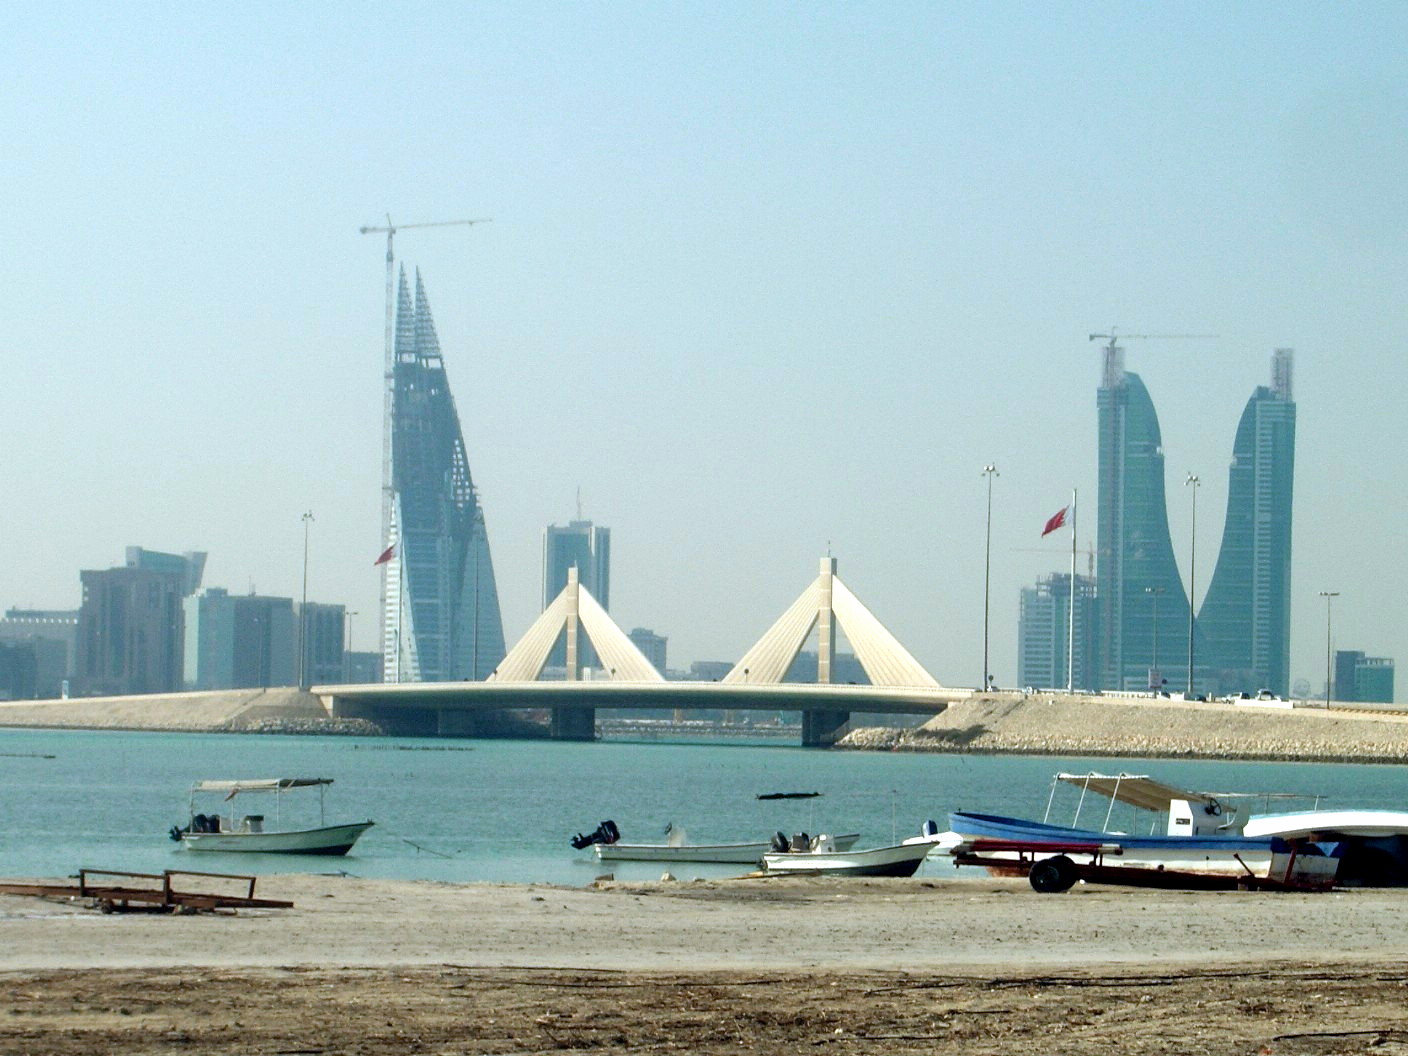 مکان های زیبای گردشگری و جاهای دیدنی کشور بحرین + عکس